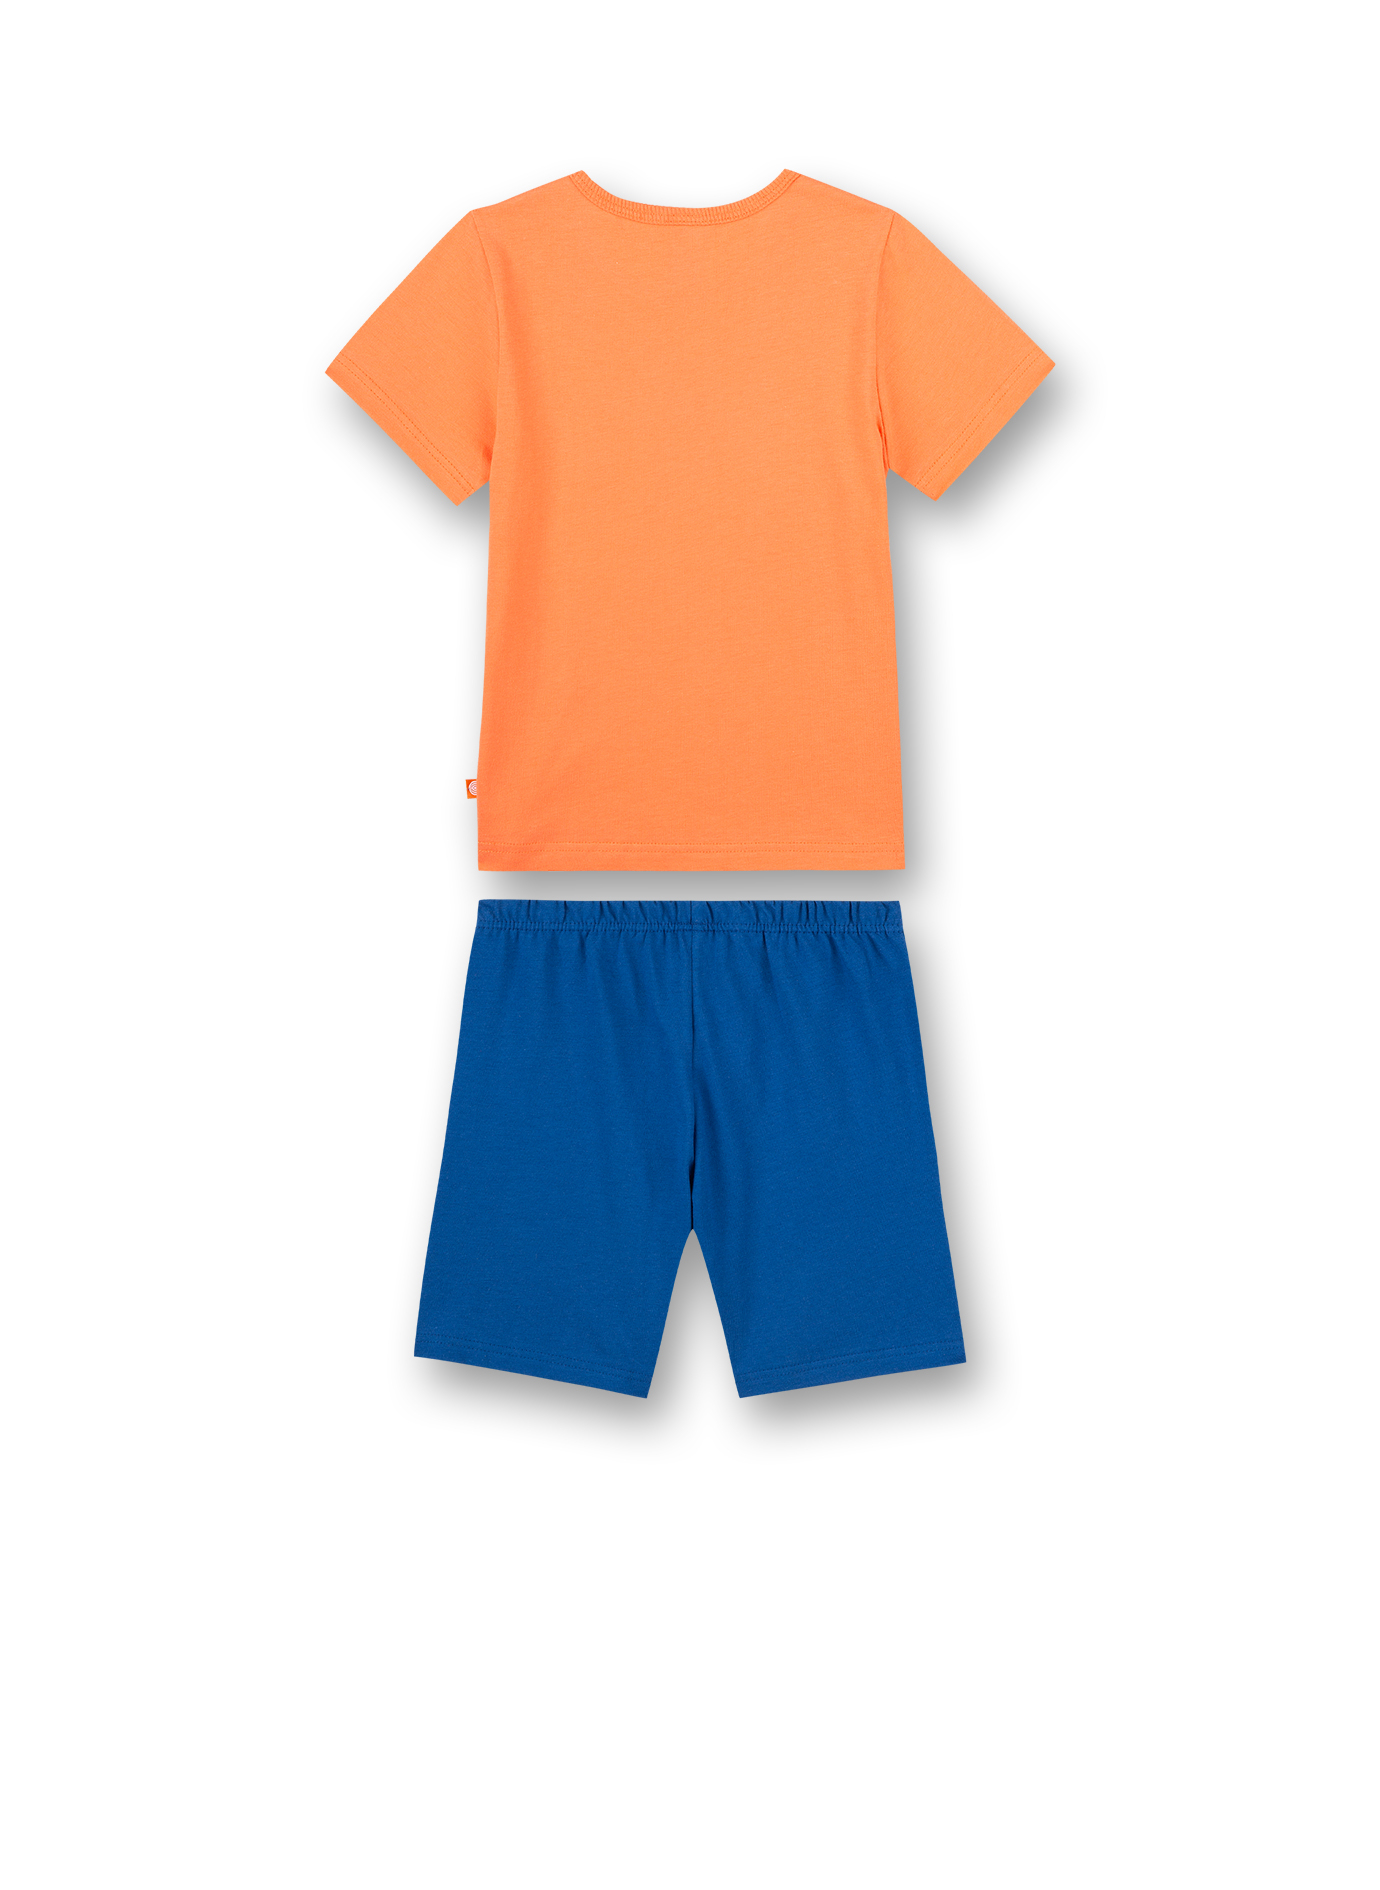 Jungen-Schlafanzug kurz Orange BMX